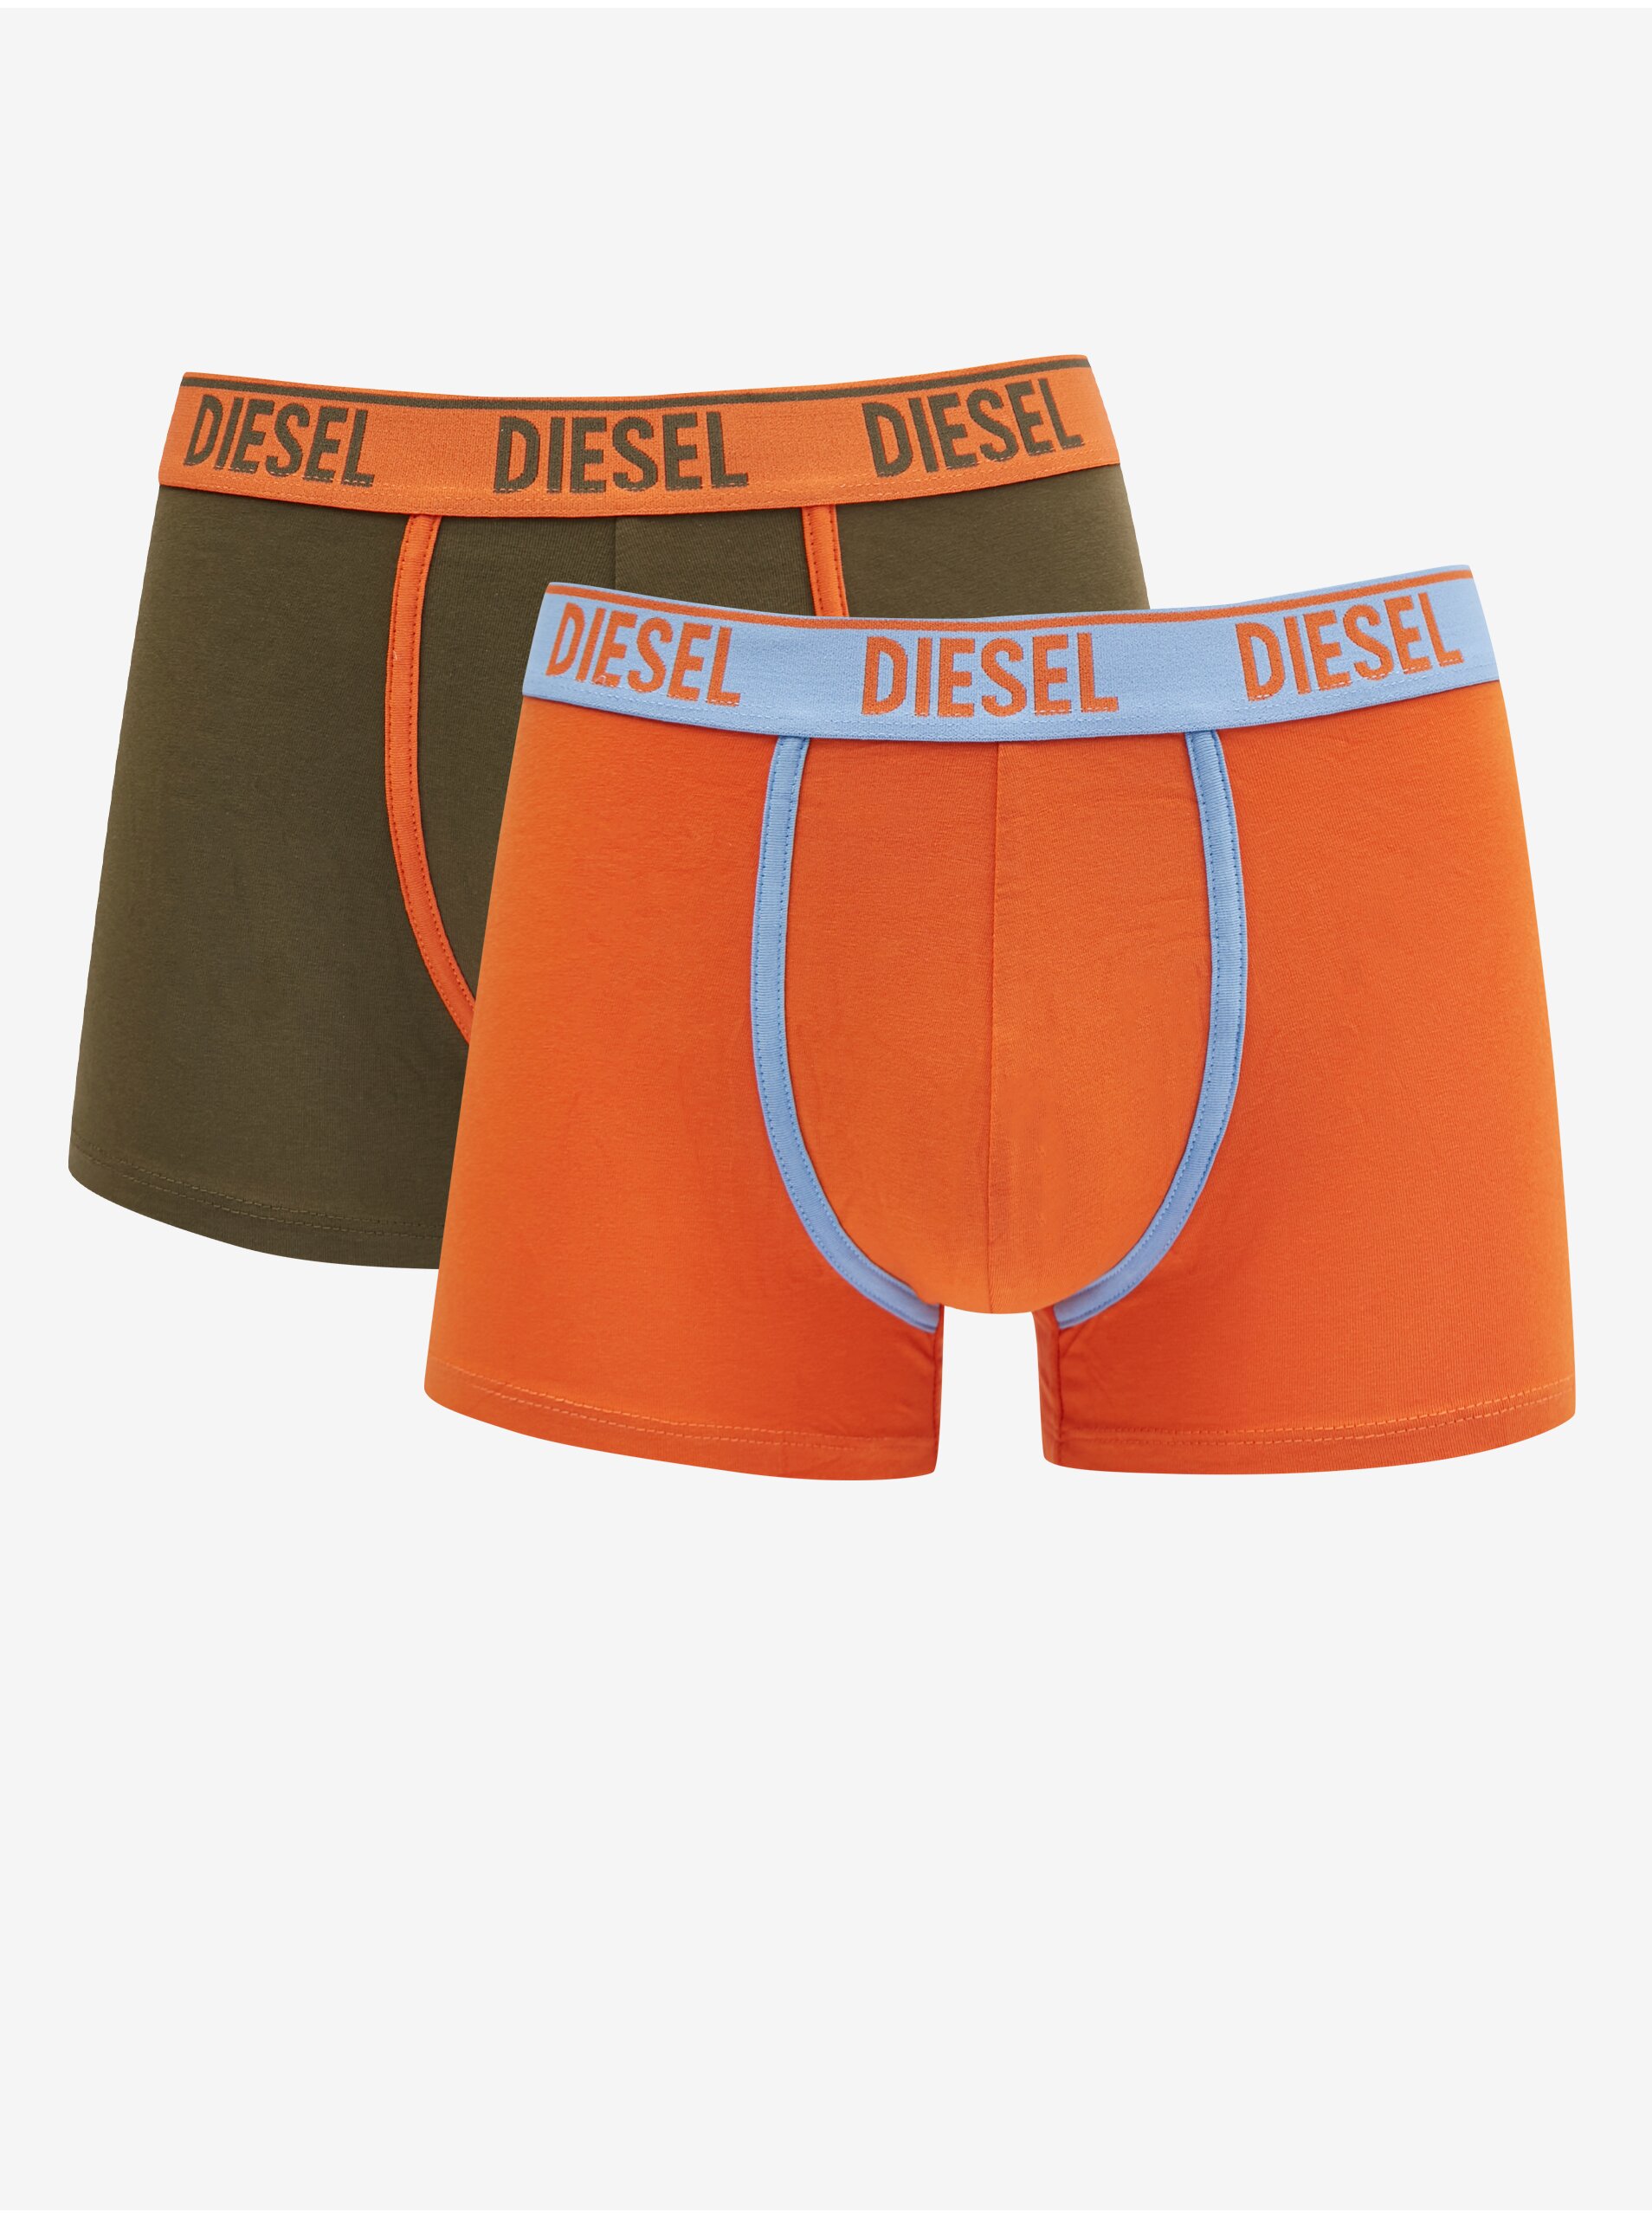 Lacno Boxerky pre mužov Diesel - oranžová, kaki